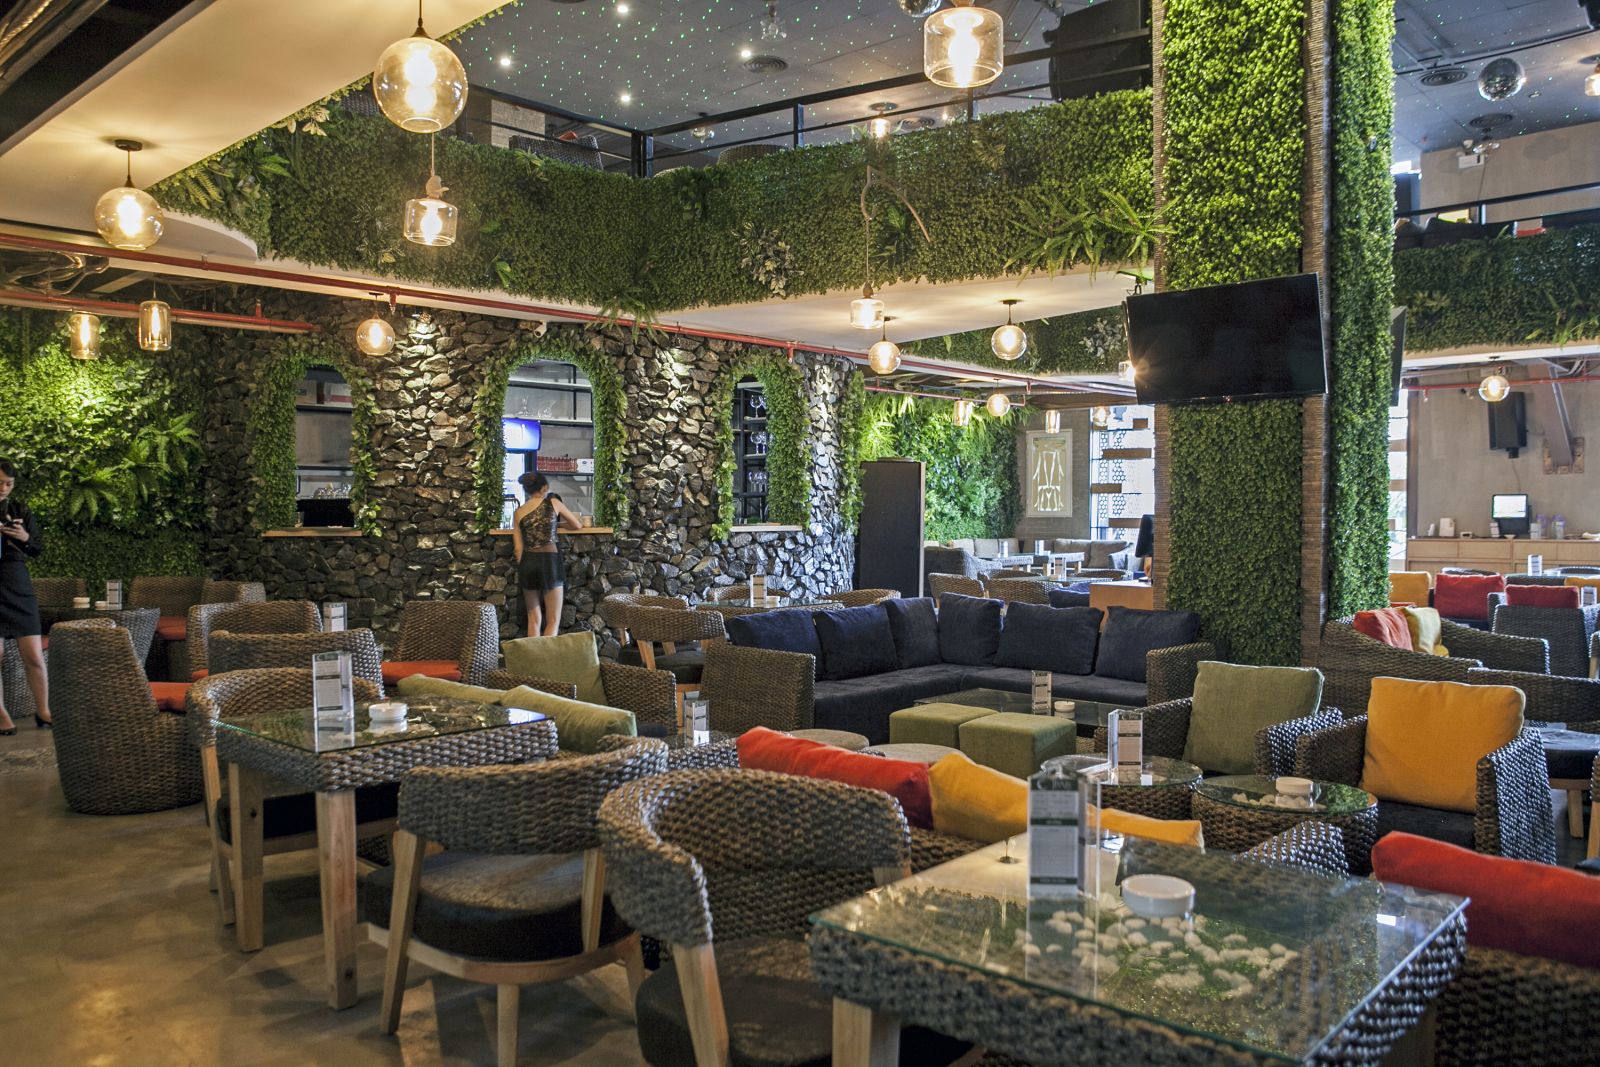 Trixie cafe - quán cà phê không gian xanh độc nhất vô nhị tại Hà Nội